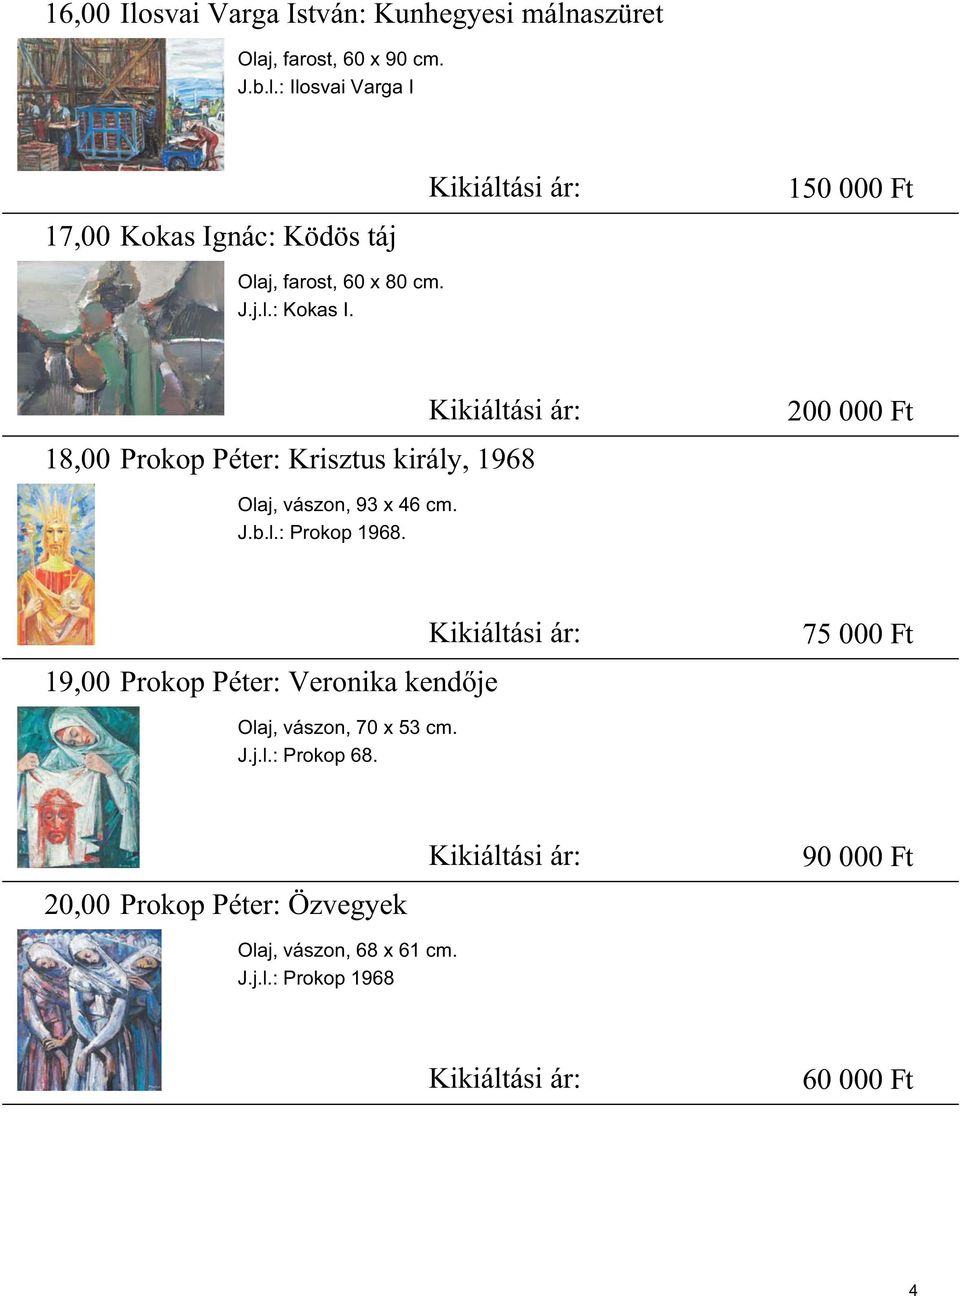 19,00 Prokop Péter: Veronika kend je Kikiáltási ár: 75 000 Ft Olaj, vászon, 70 x 53 cm. J.j.l.: Prokop 68.